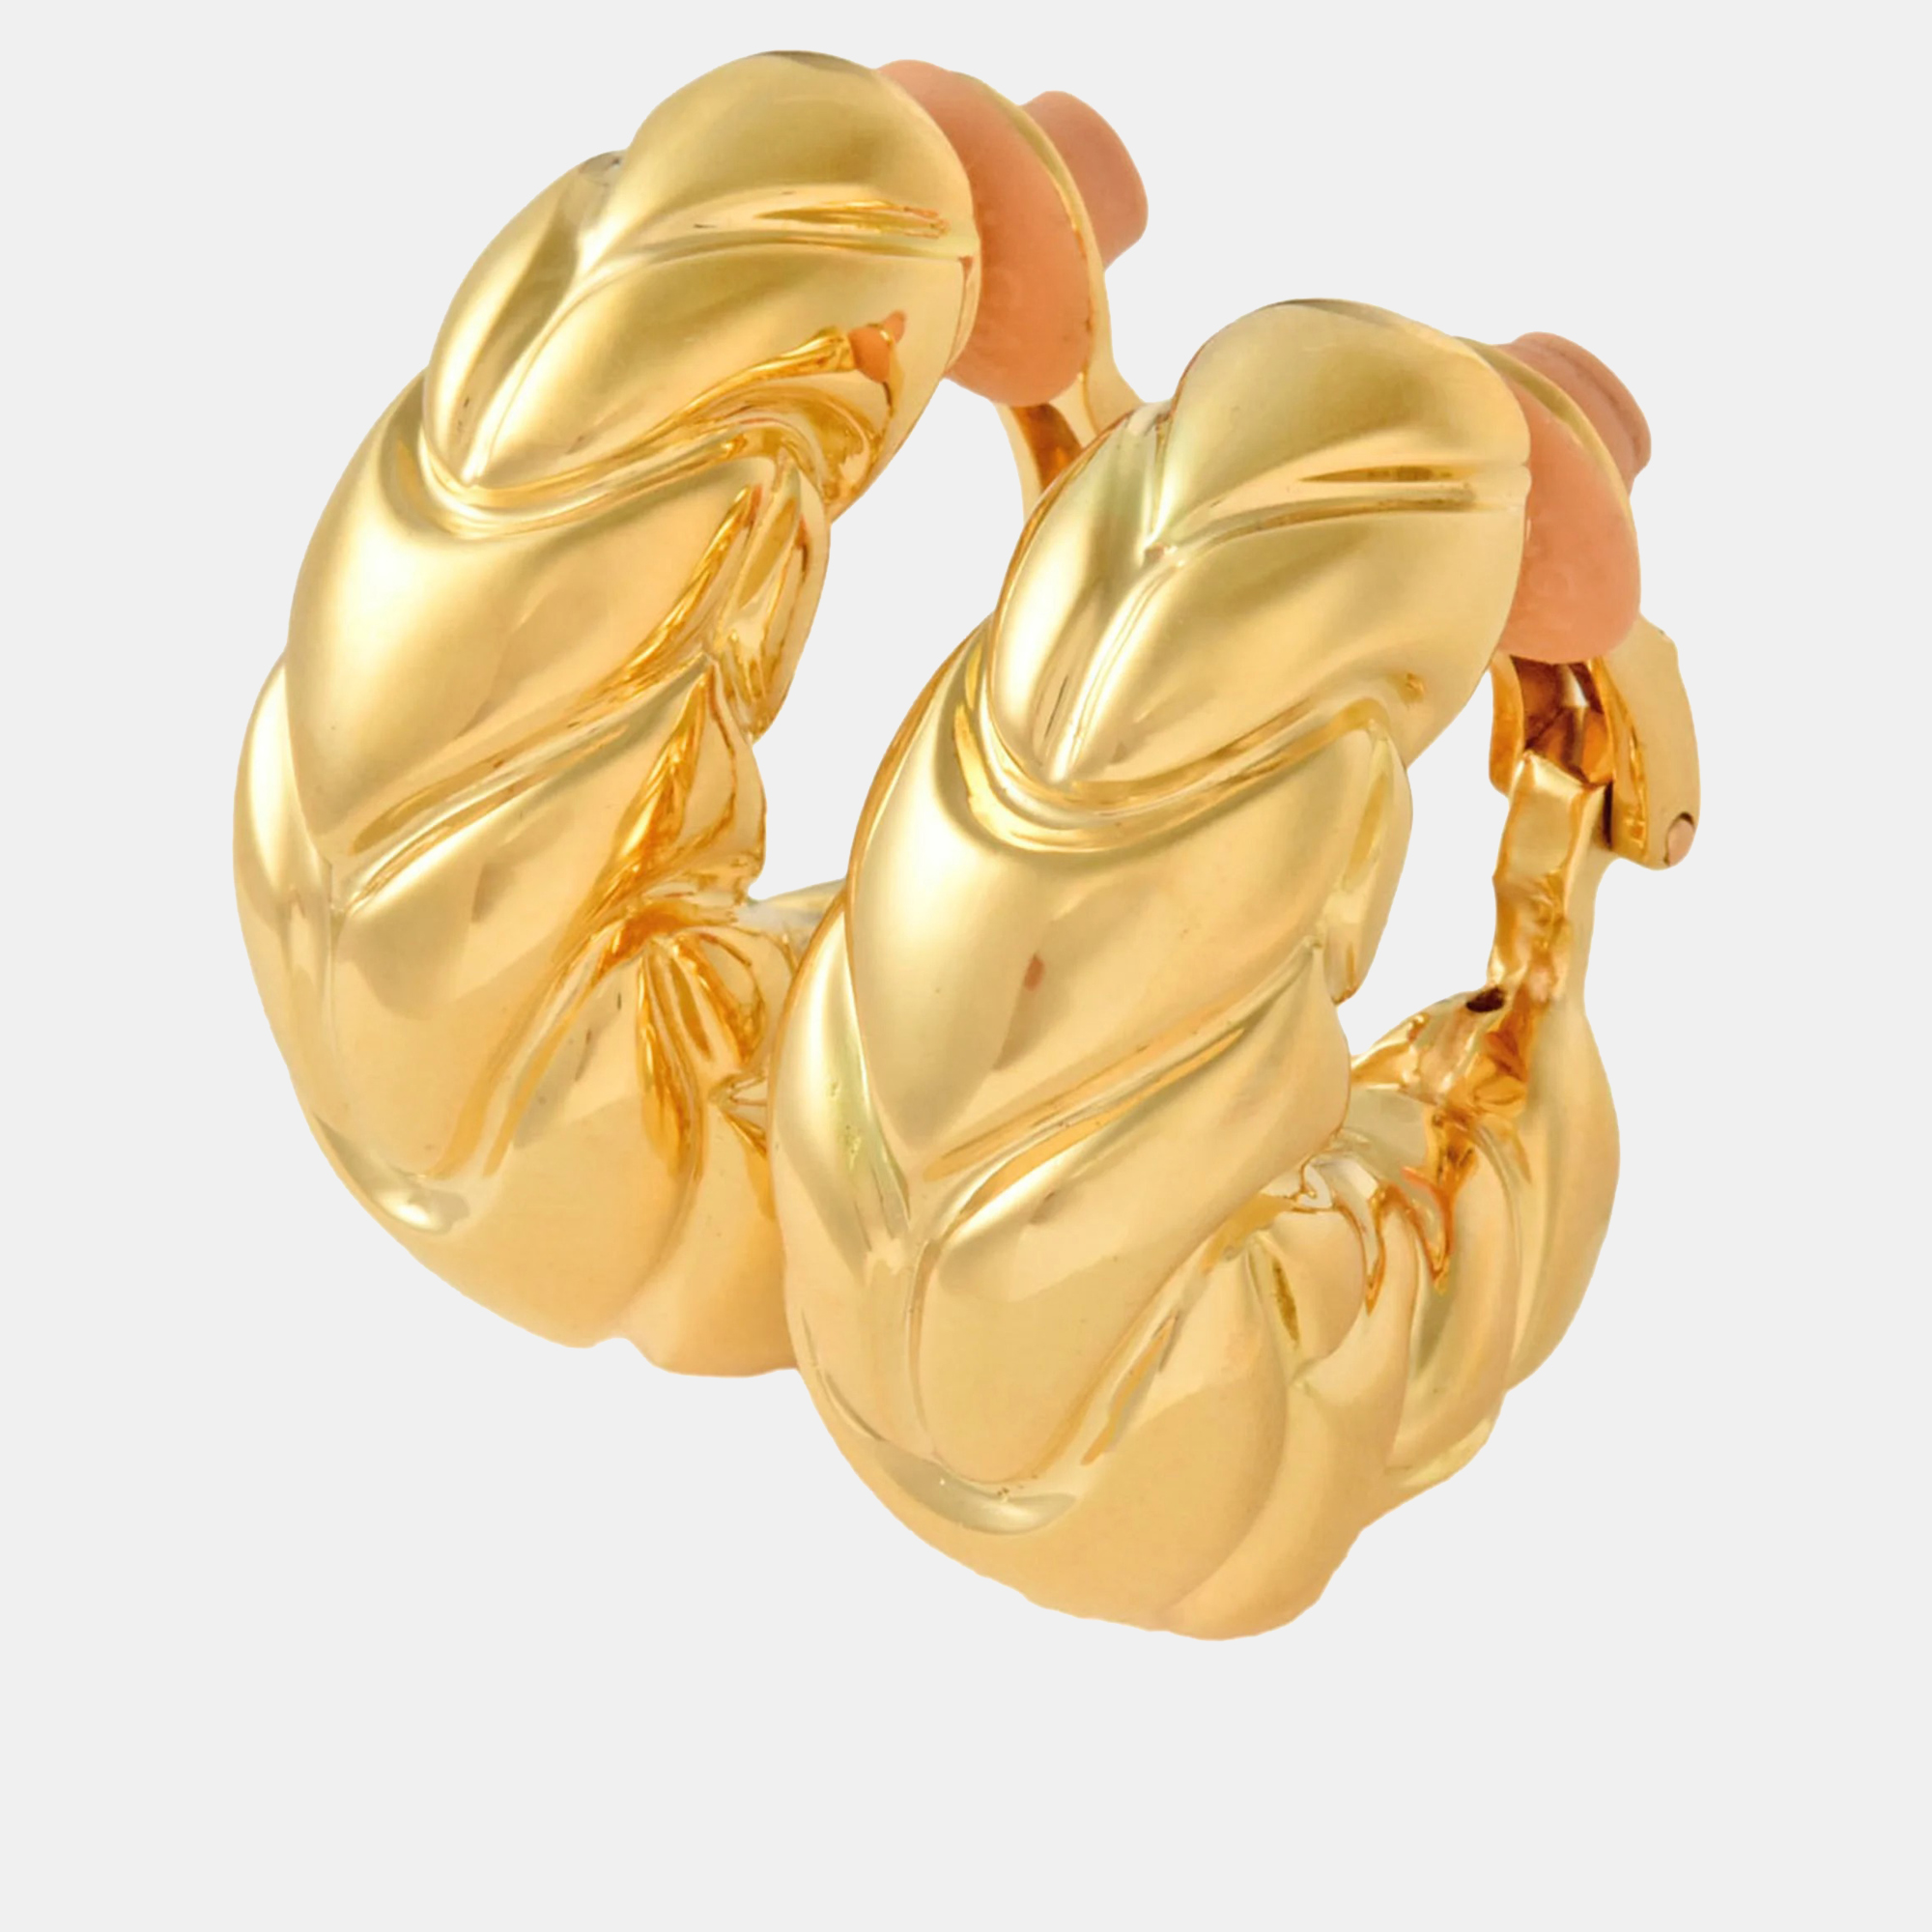 Bvlgari 18K Yellow Gold Spiga Vintage Hoop Earrings